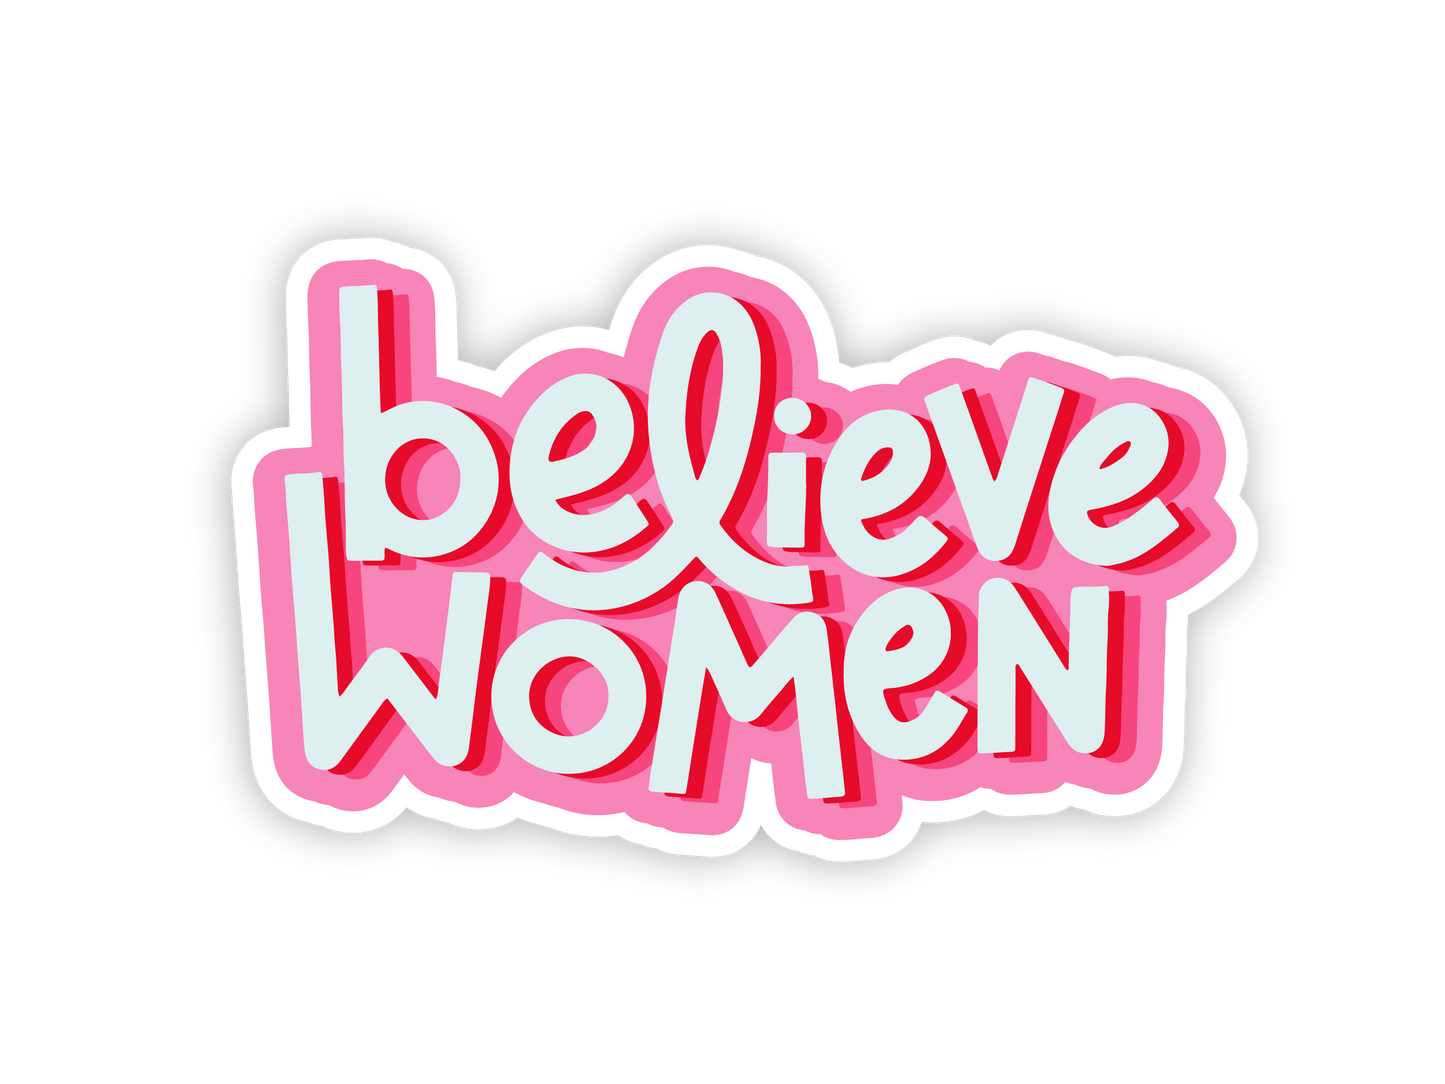 Believe Women Sticker